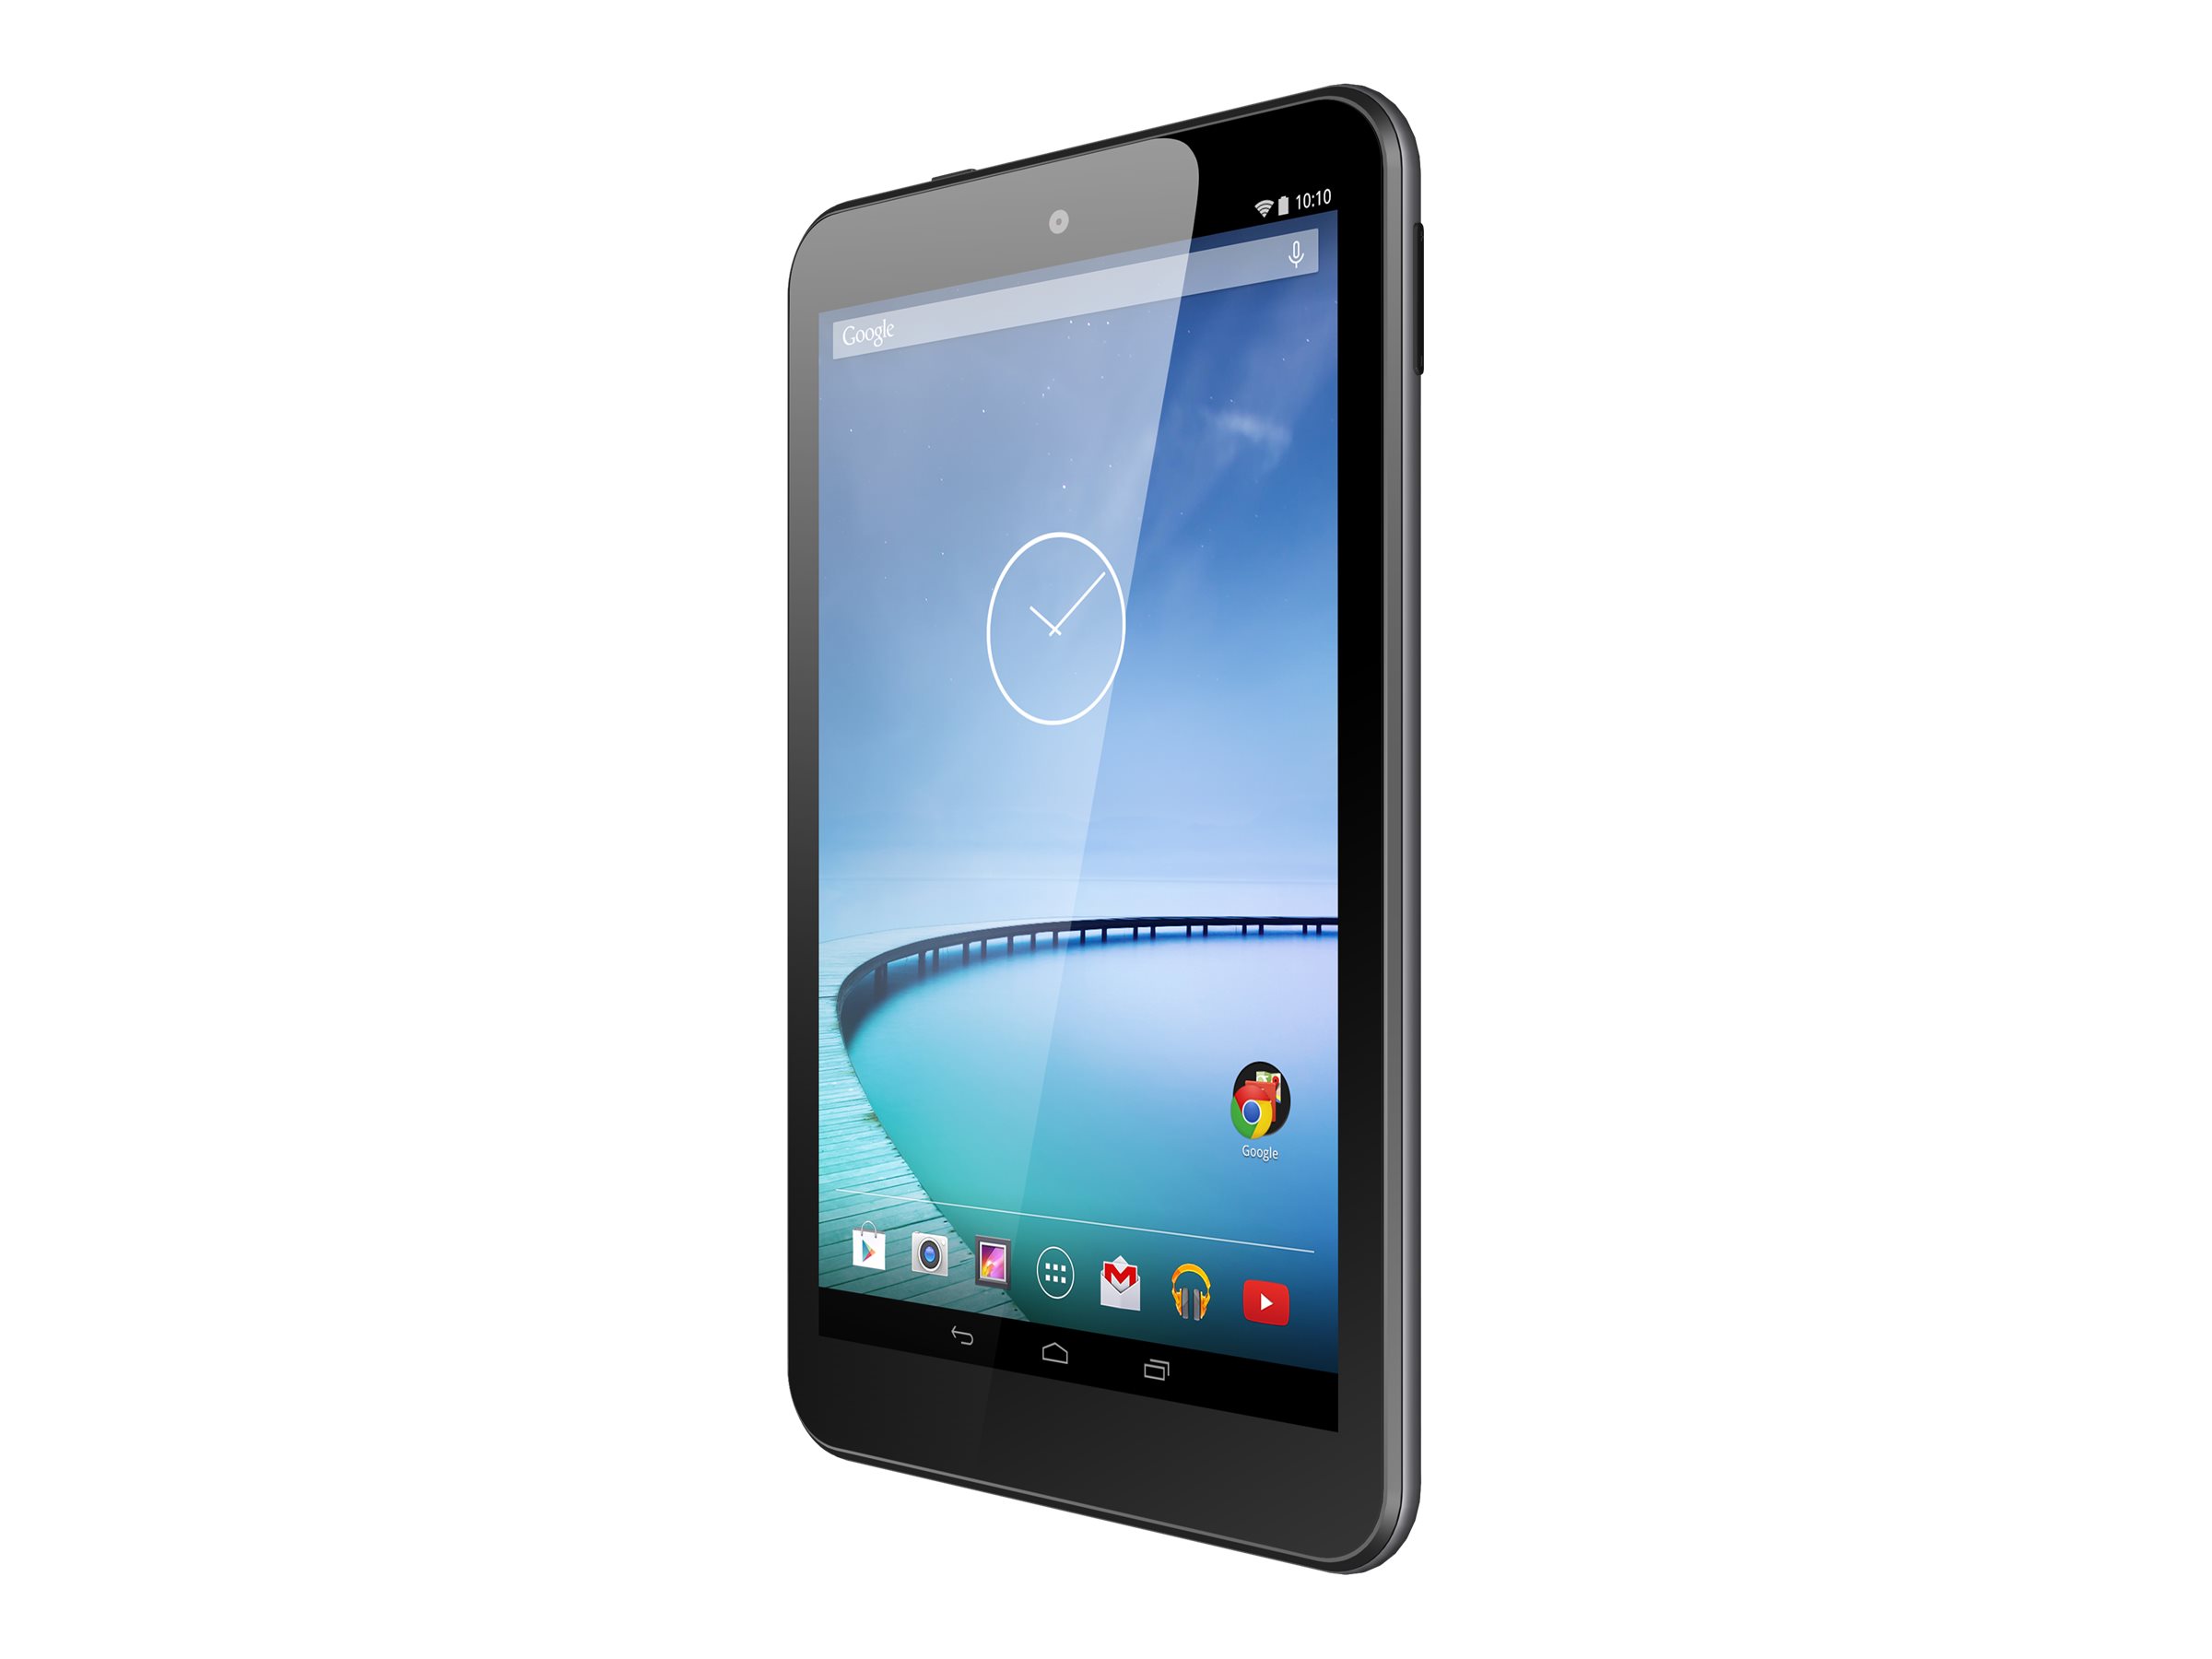 Hisense Sero 8 - Tablet - Android 4.4 (KitKat) - 16 GB - 8" (1280 x 800) - USB host - microSD slot - image 2 of 6